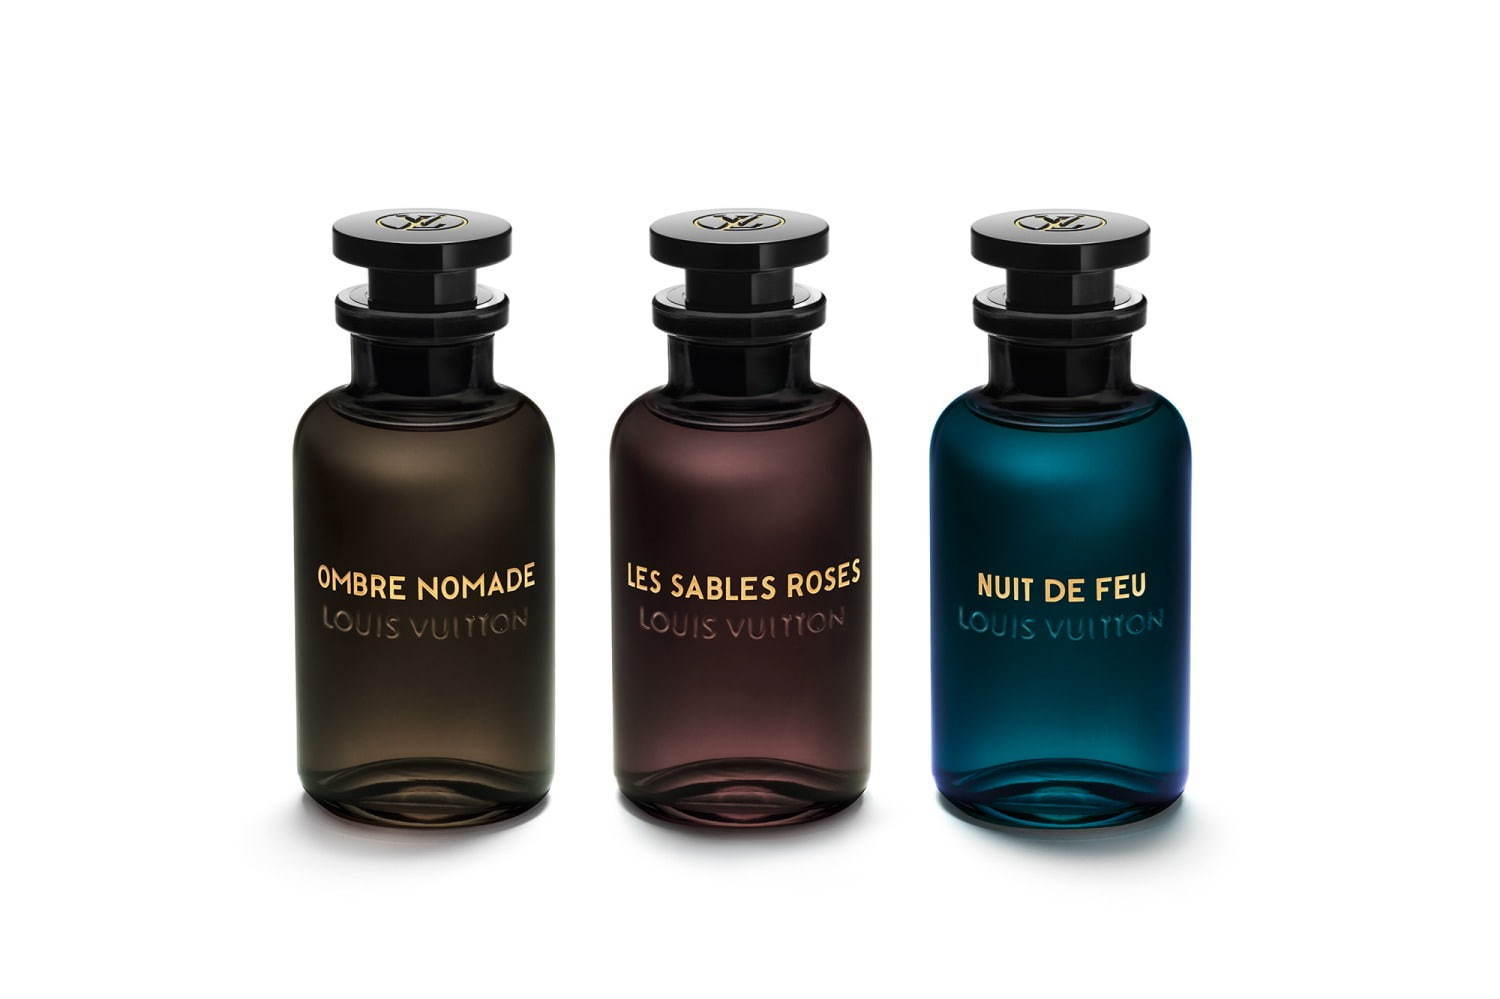 Nuit de Feu Louis Vuitton perfume - a new fragrance for women and men 2020